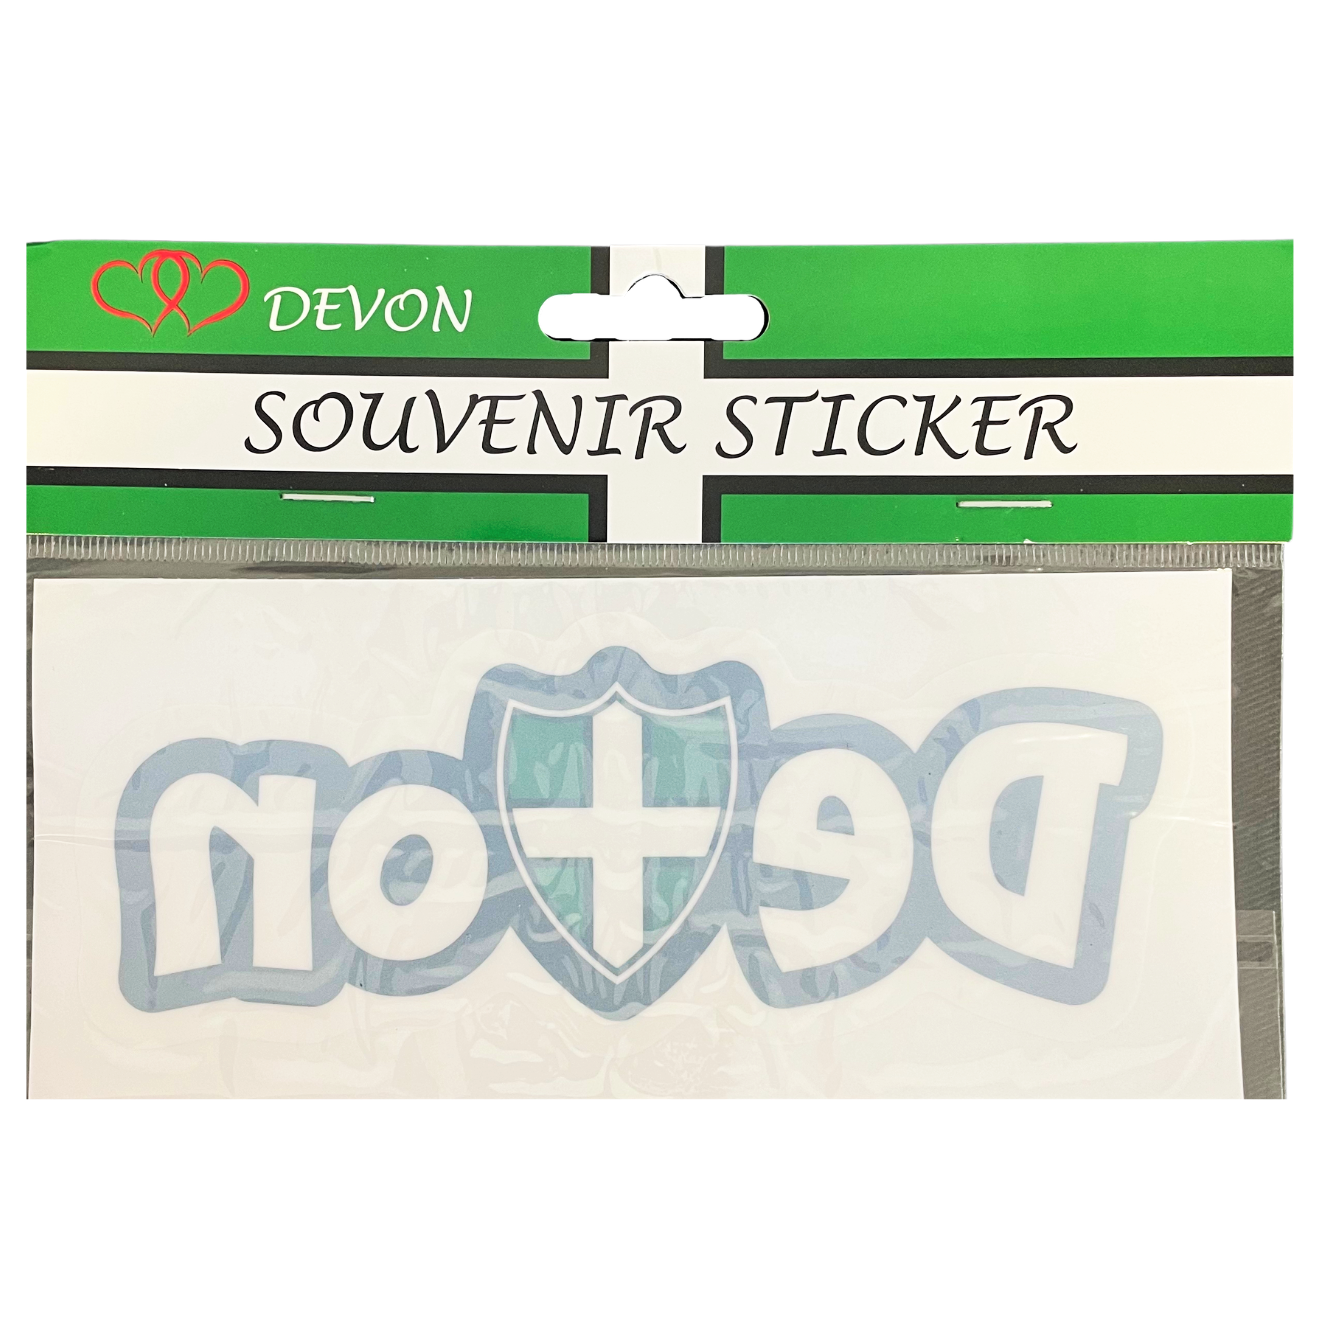 Devon and Shield Window Sticker